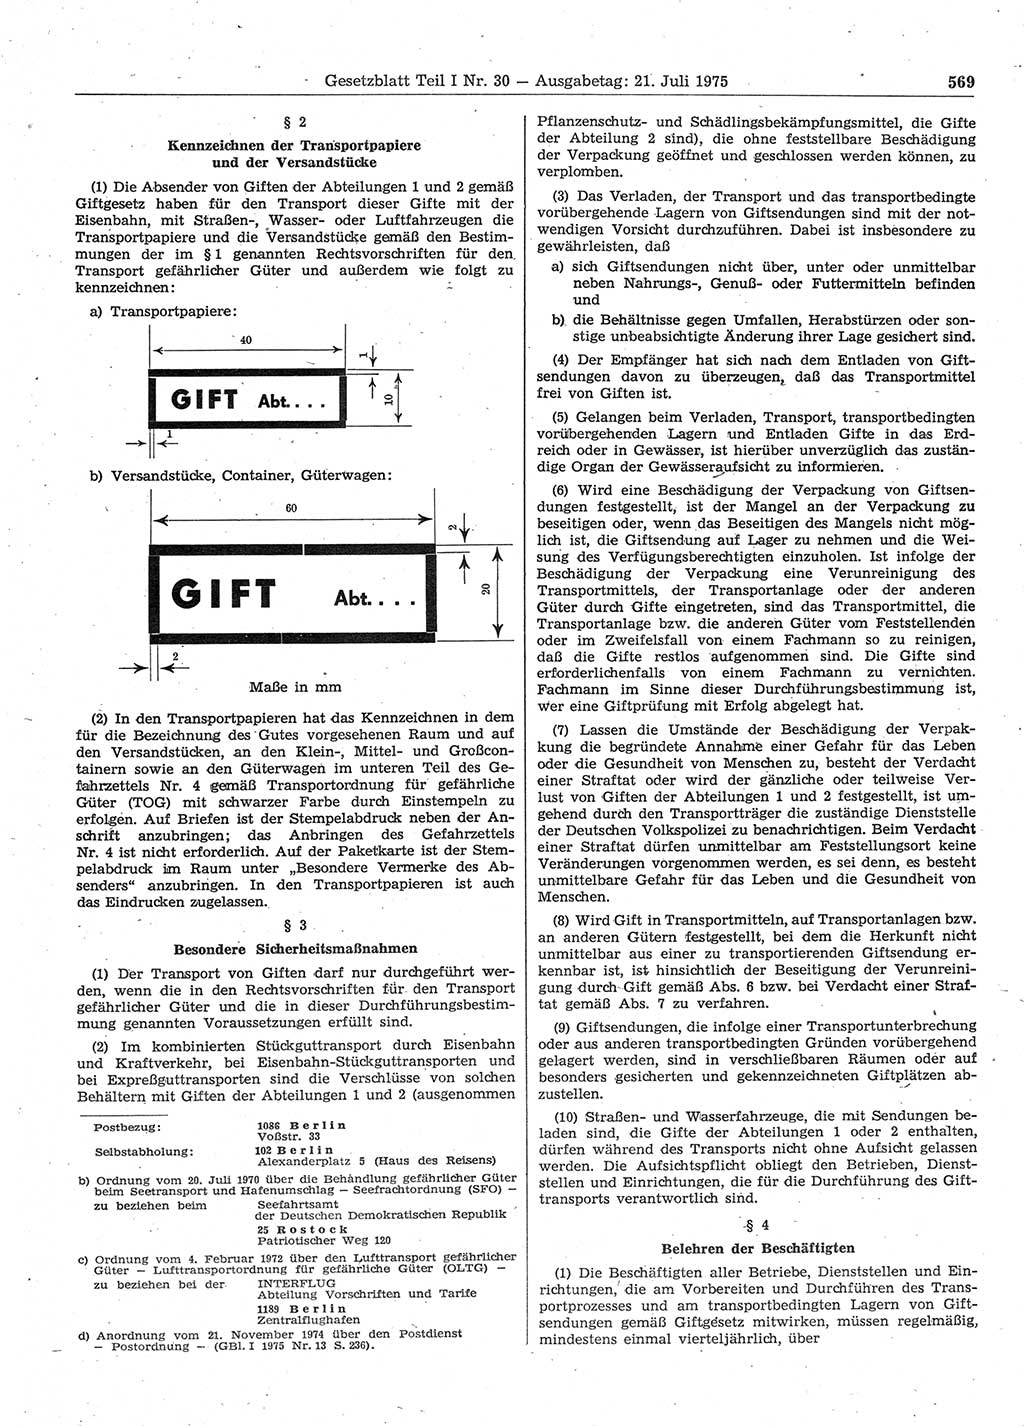 Gesetzblatt (GBl.) der Deutschen Demokratischen Republik (DDR) Teil Ⅰ 1975, Seite 569 (GBl. DDR Ⅰ 1975, S. 569)